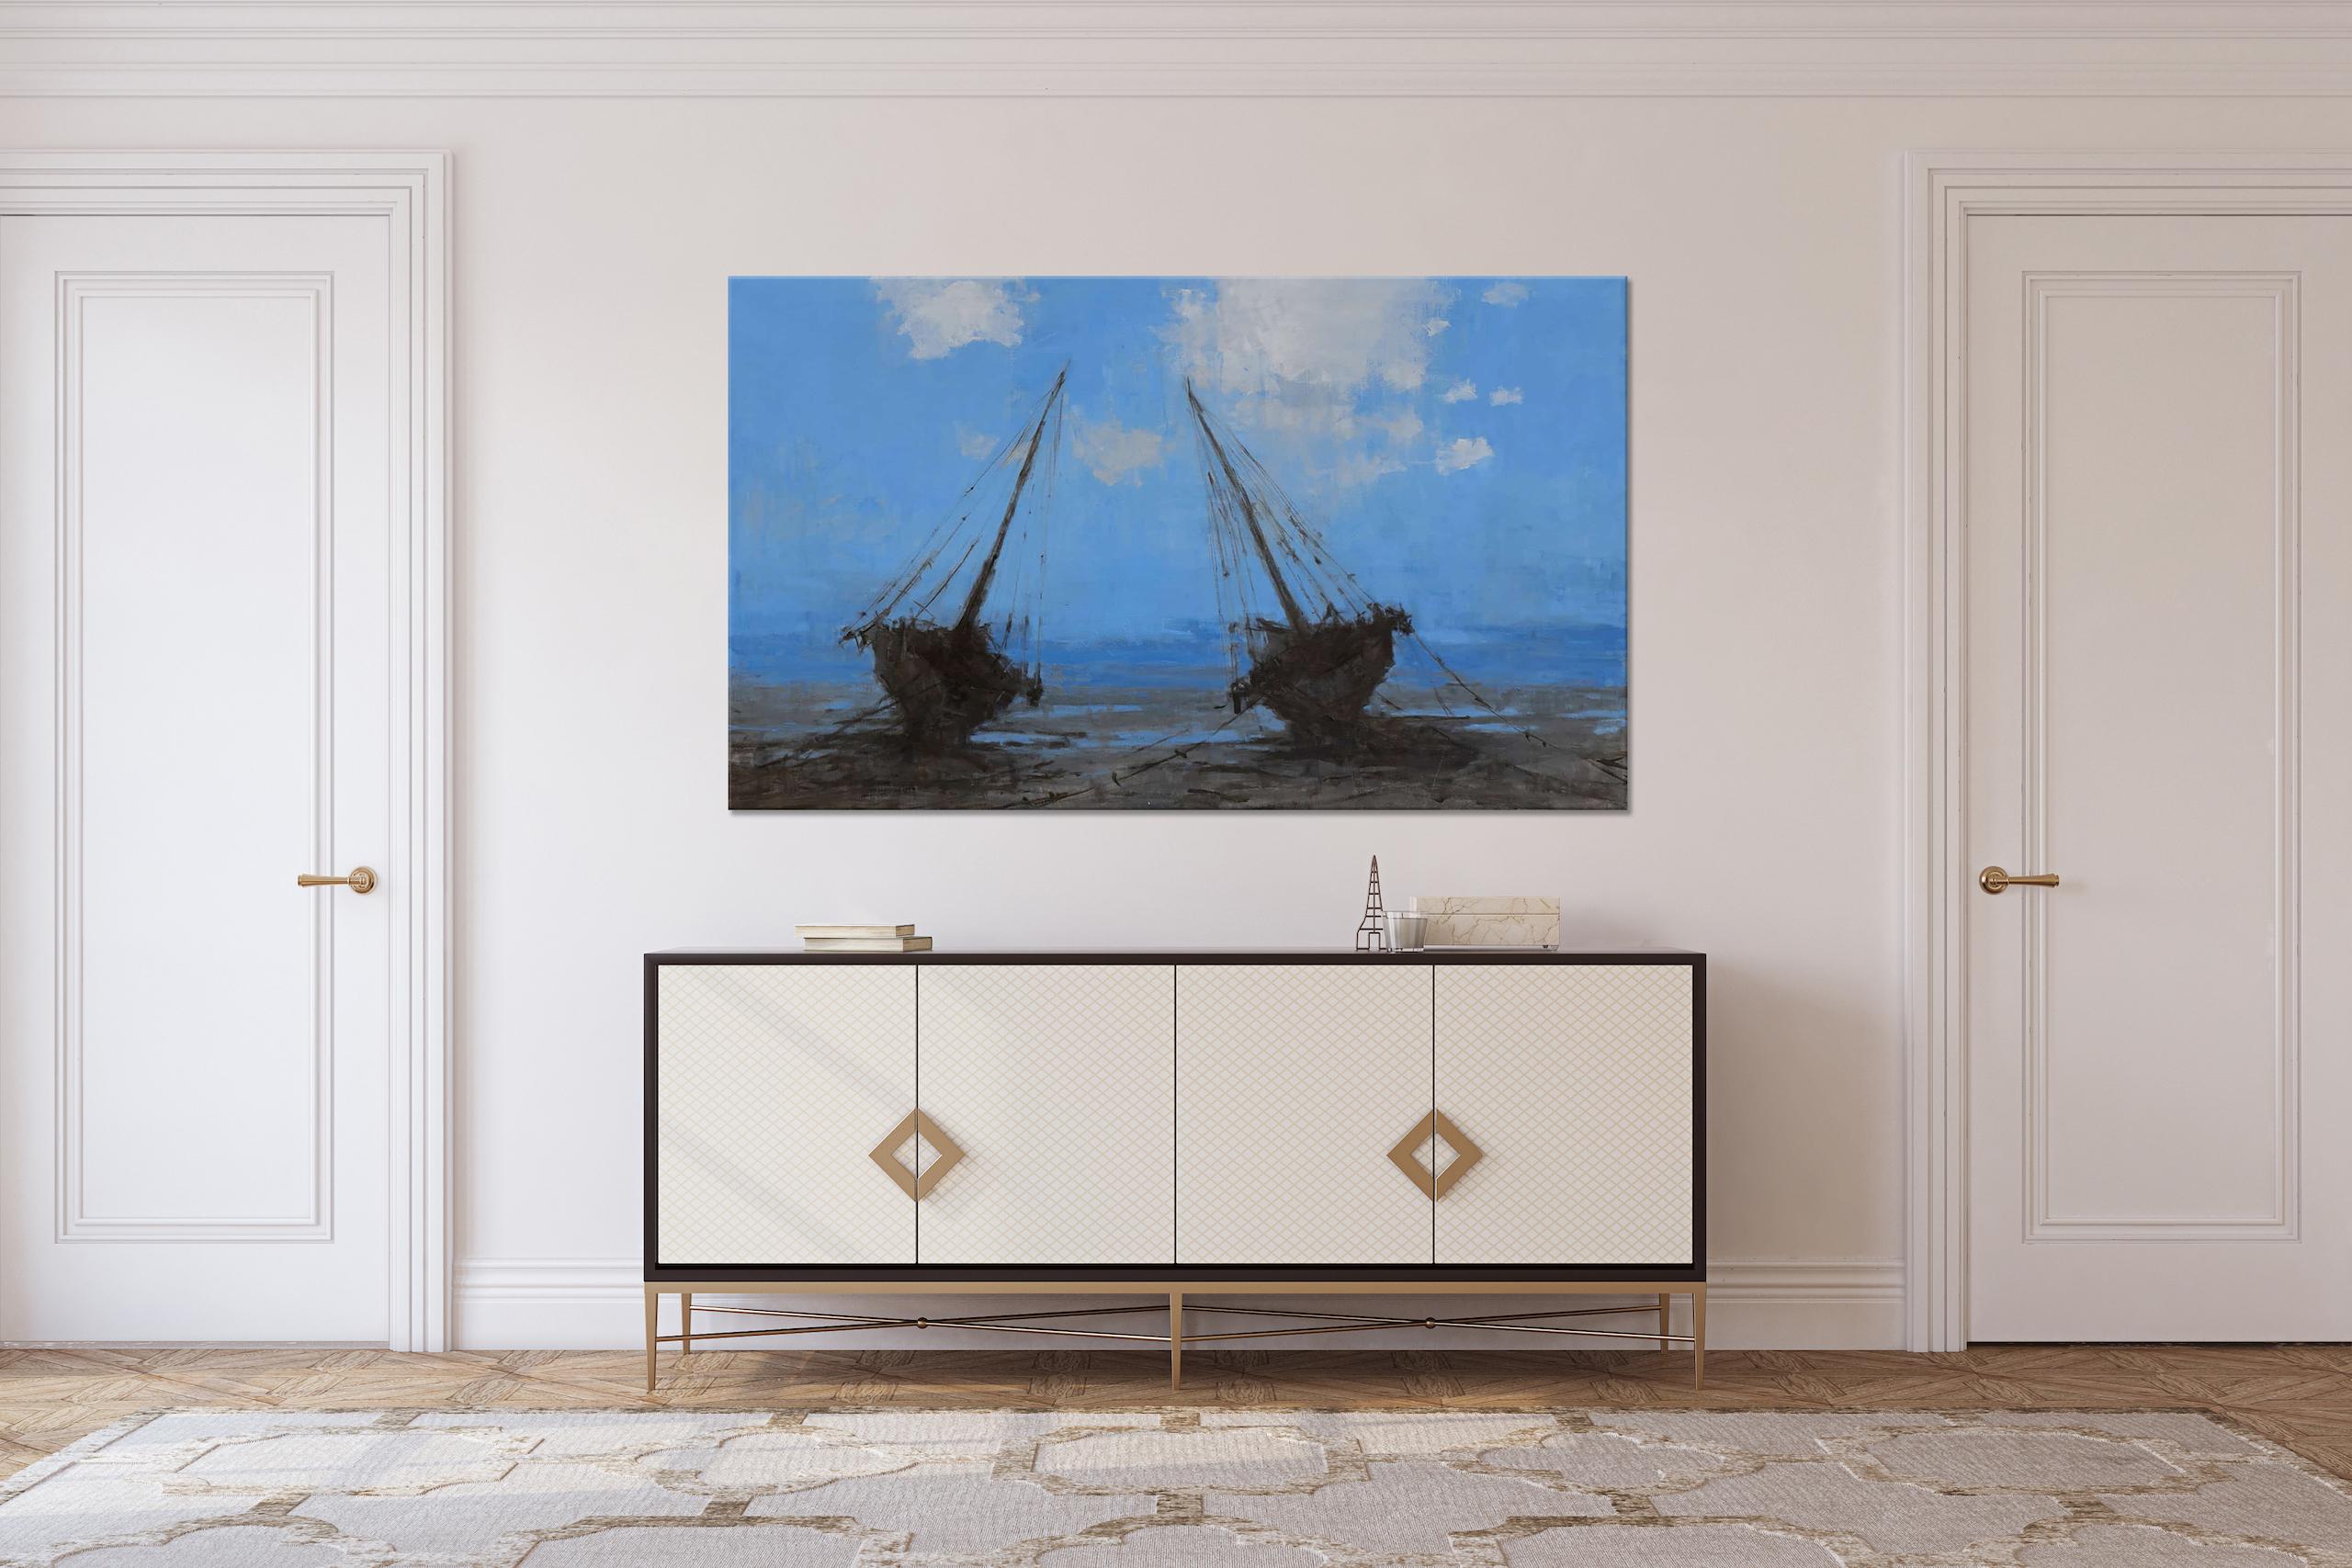 Barcas en Bagamoyo II by Calo Carratalá - Seascape painting, blue colours, boats For Sale 1